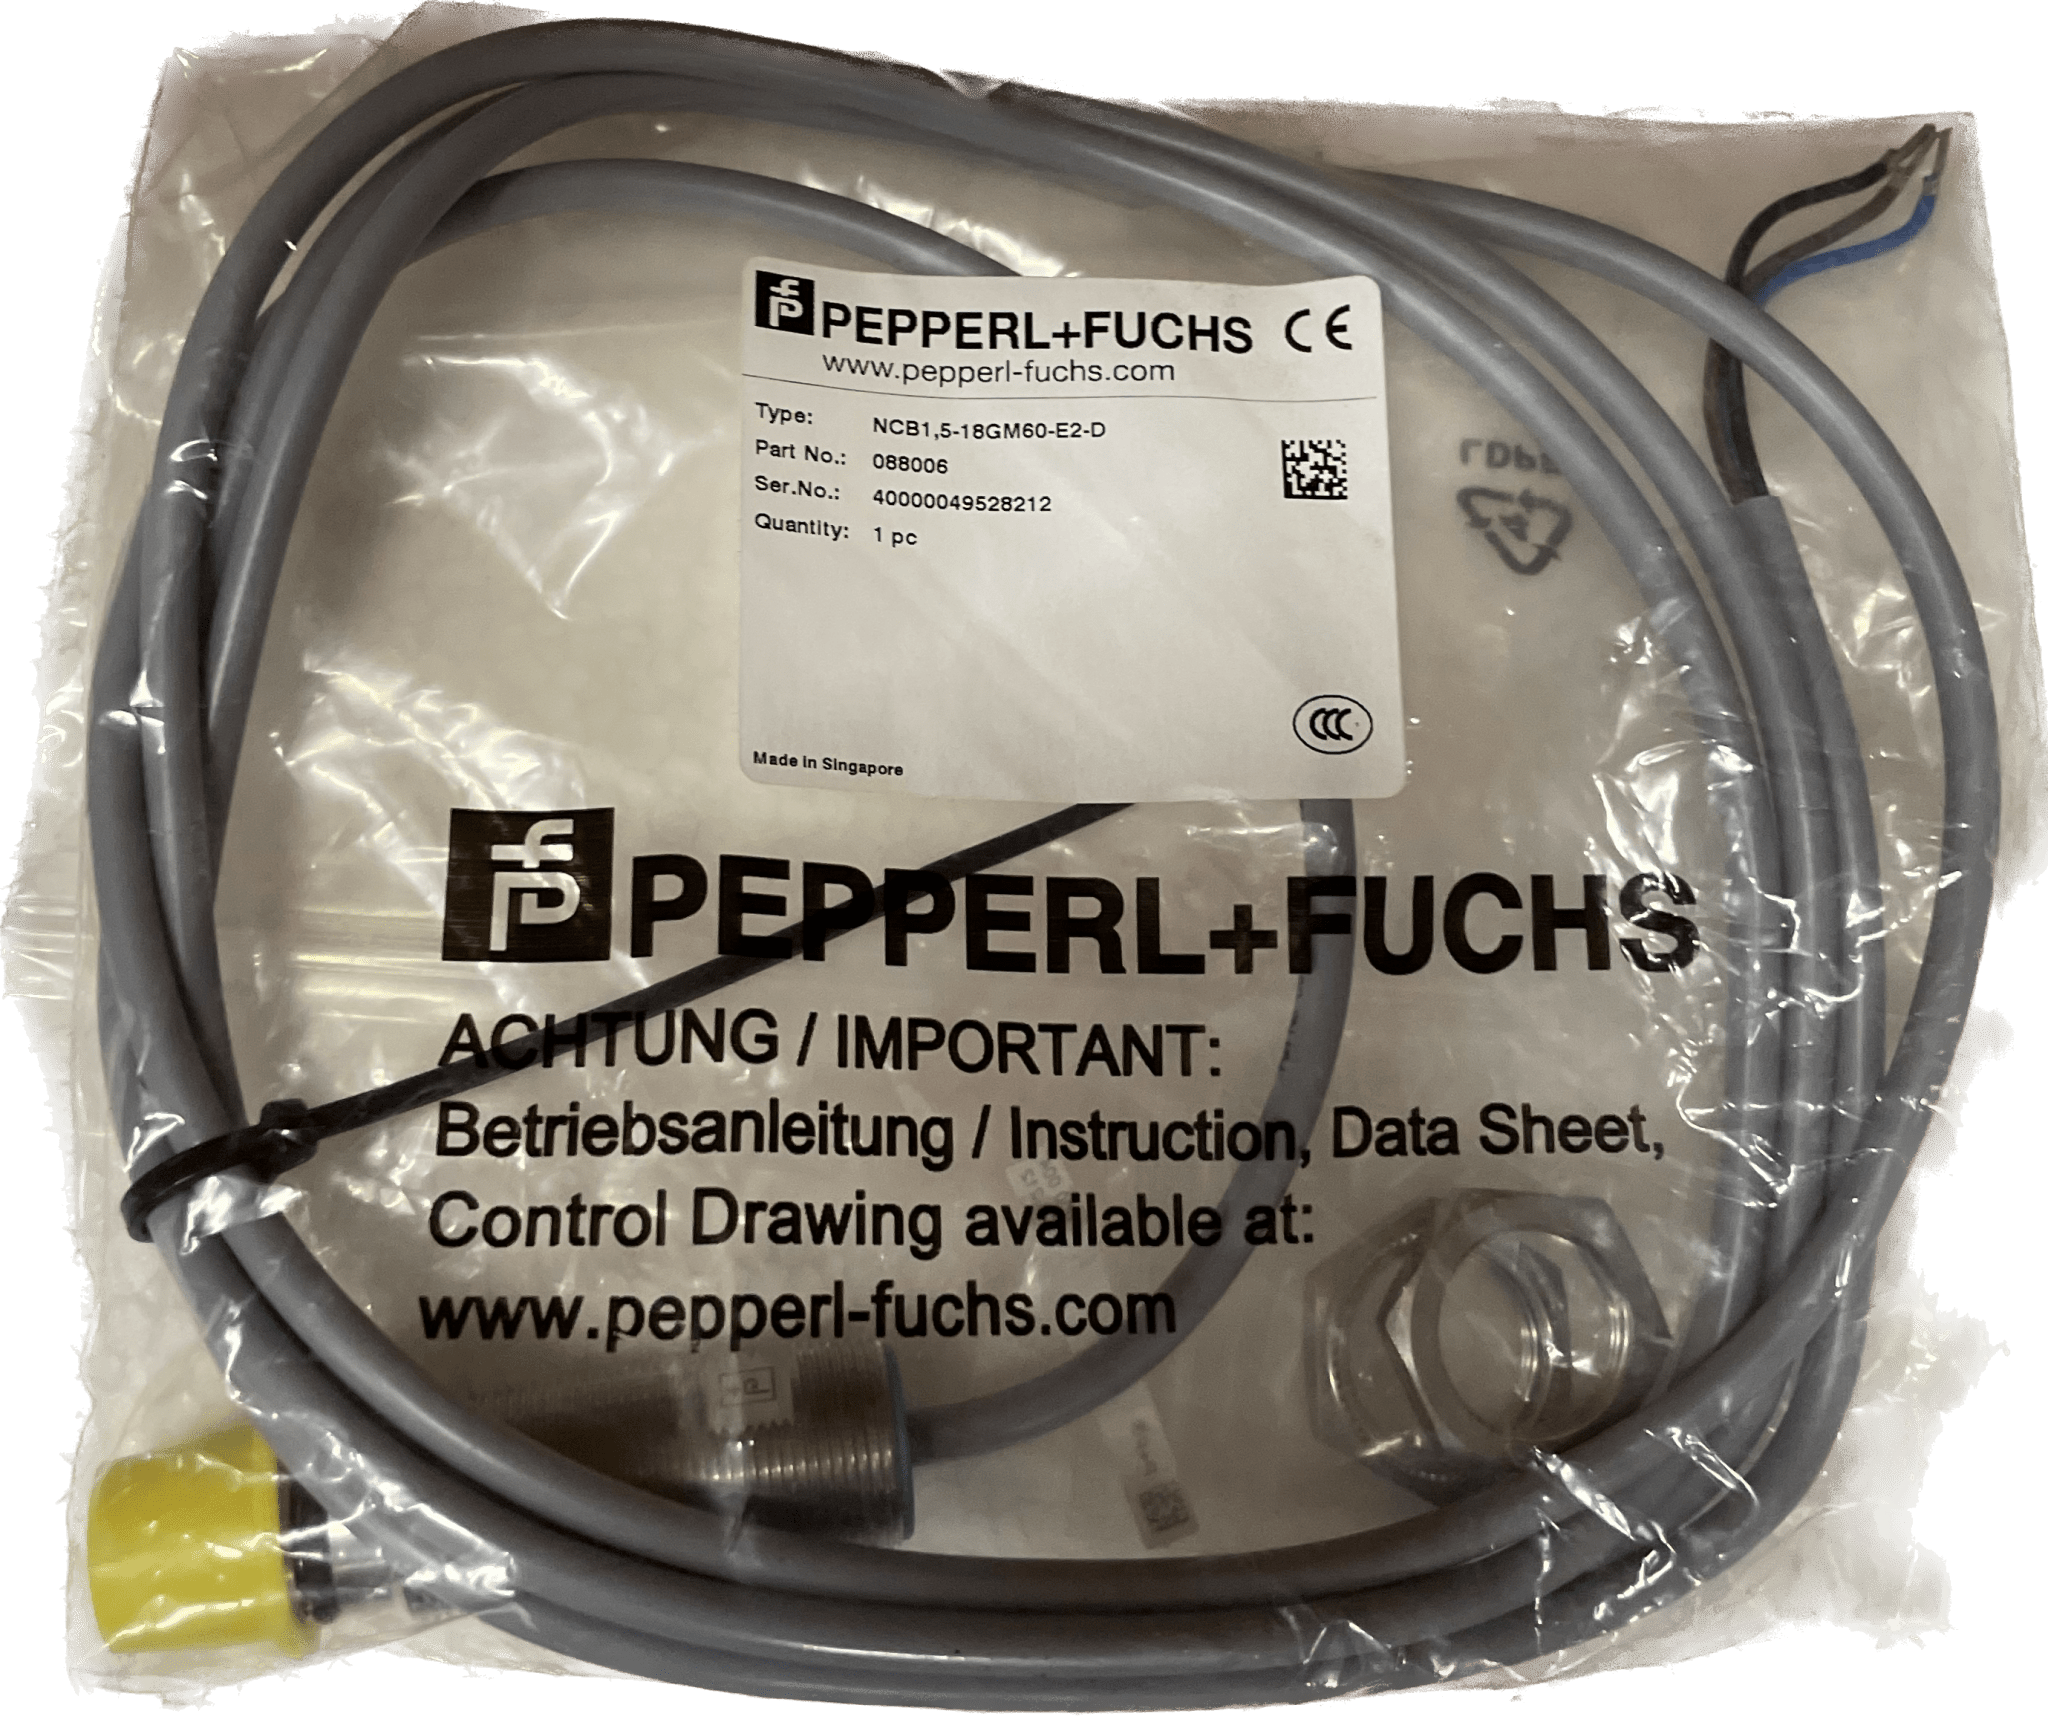 Pepperl+Fuchs 088006 NCB1,5-18GM60-E2-D - #product_category# | Klenk Maschinenhandel